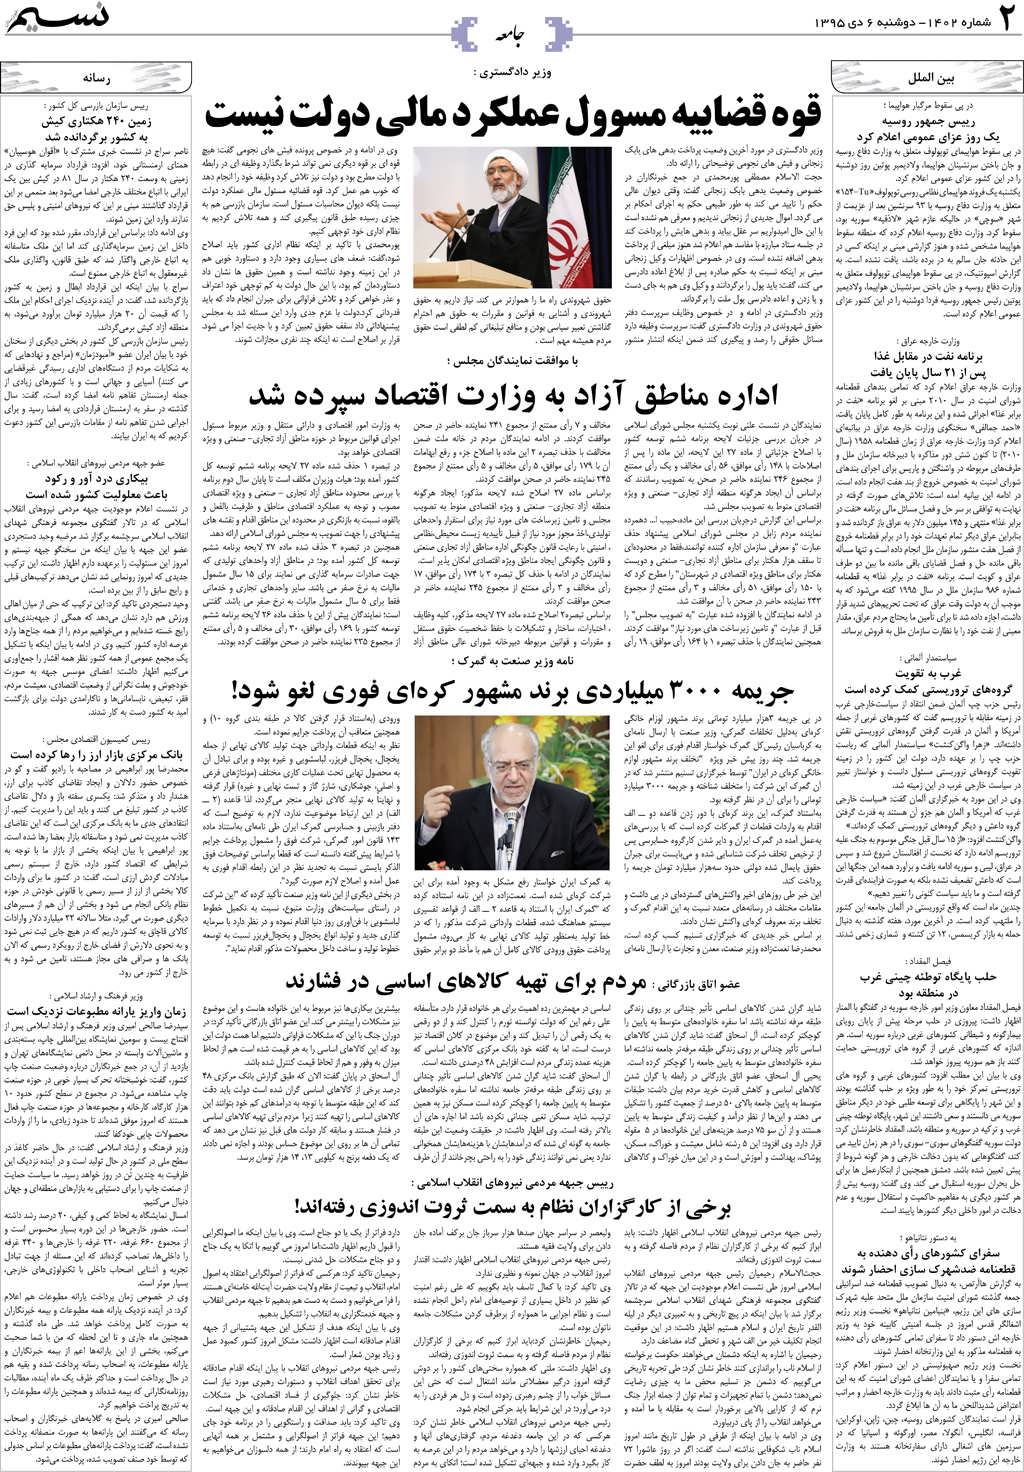 صفحه جامعه روزنامه نسیم شماره 1402